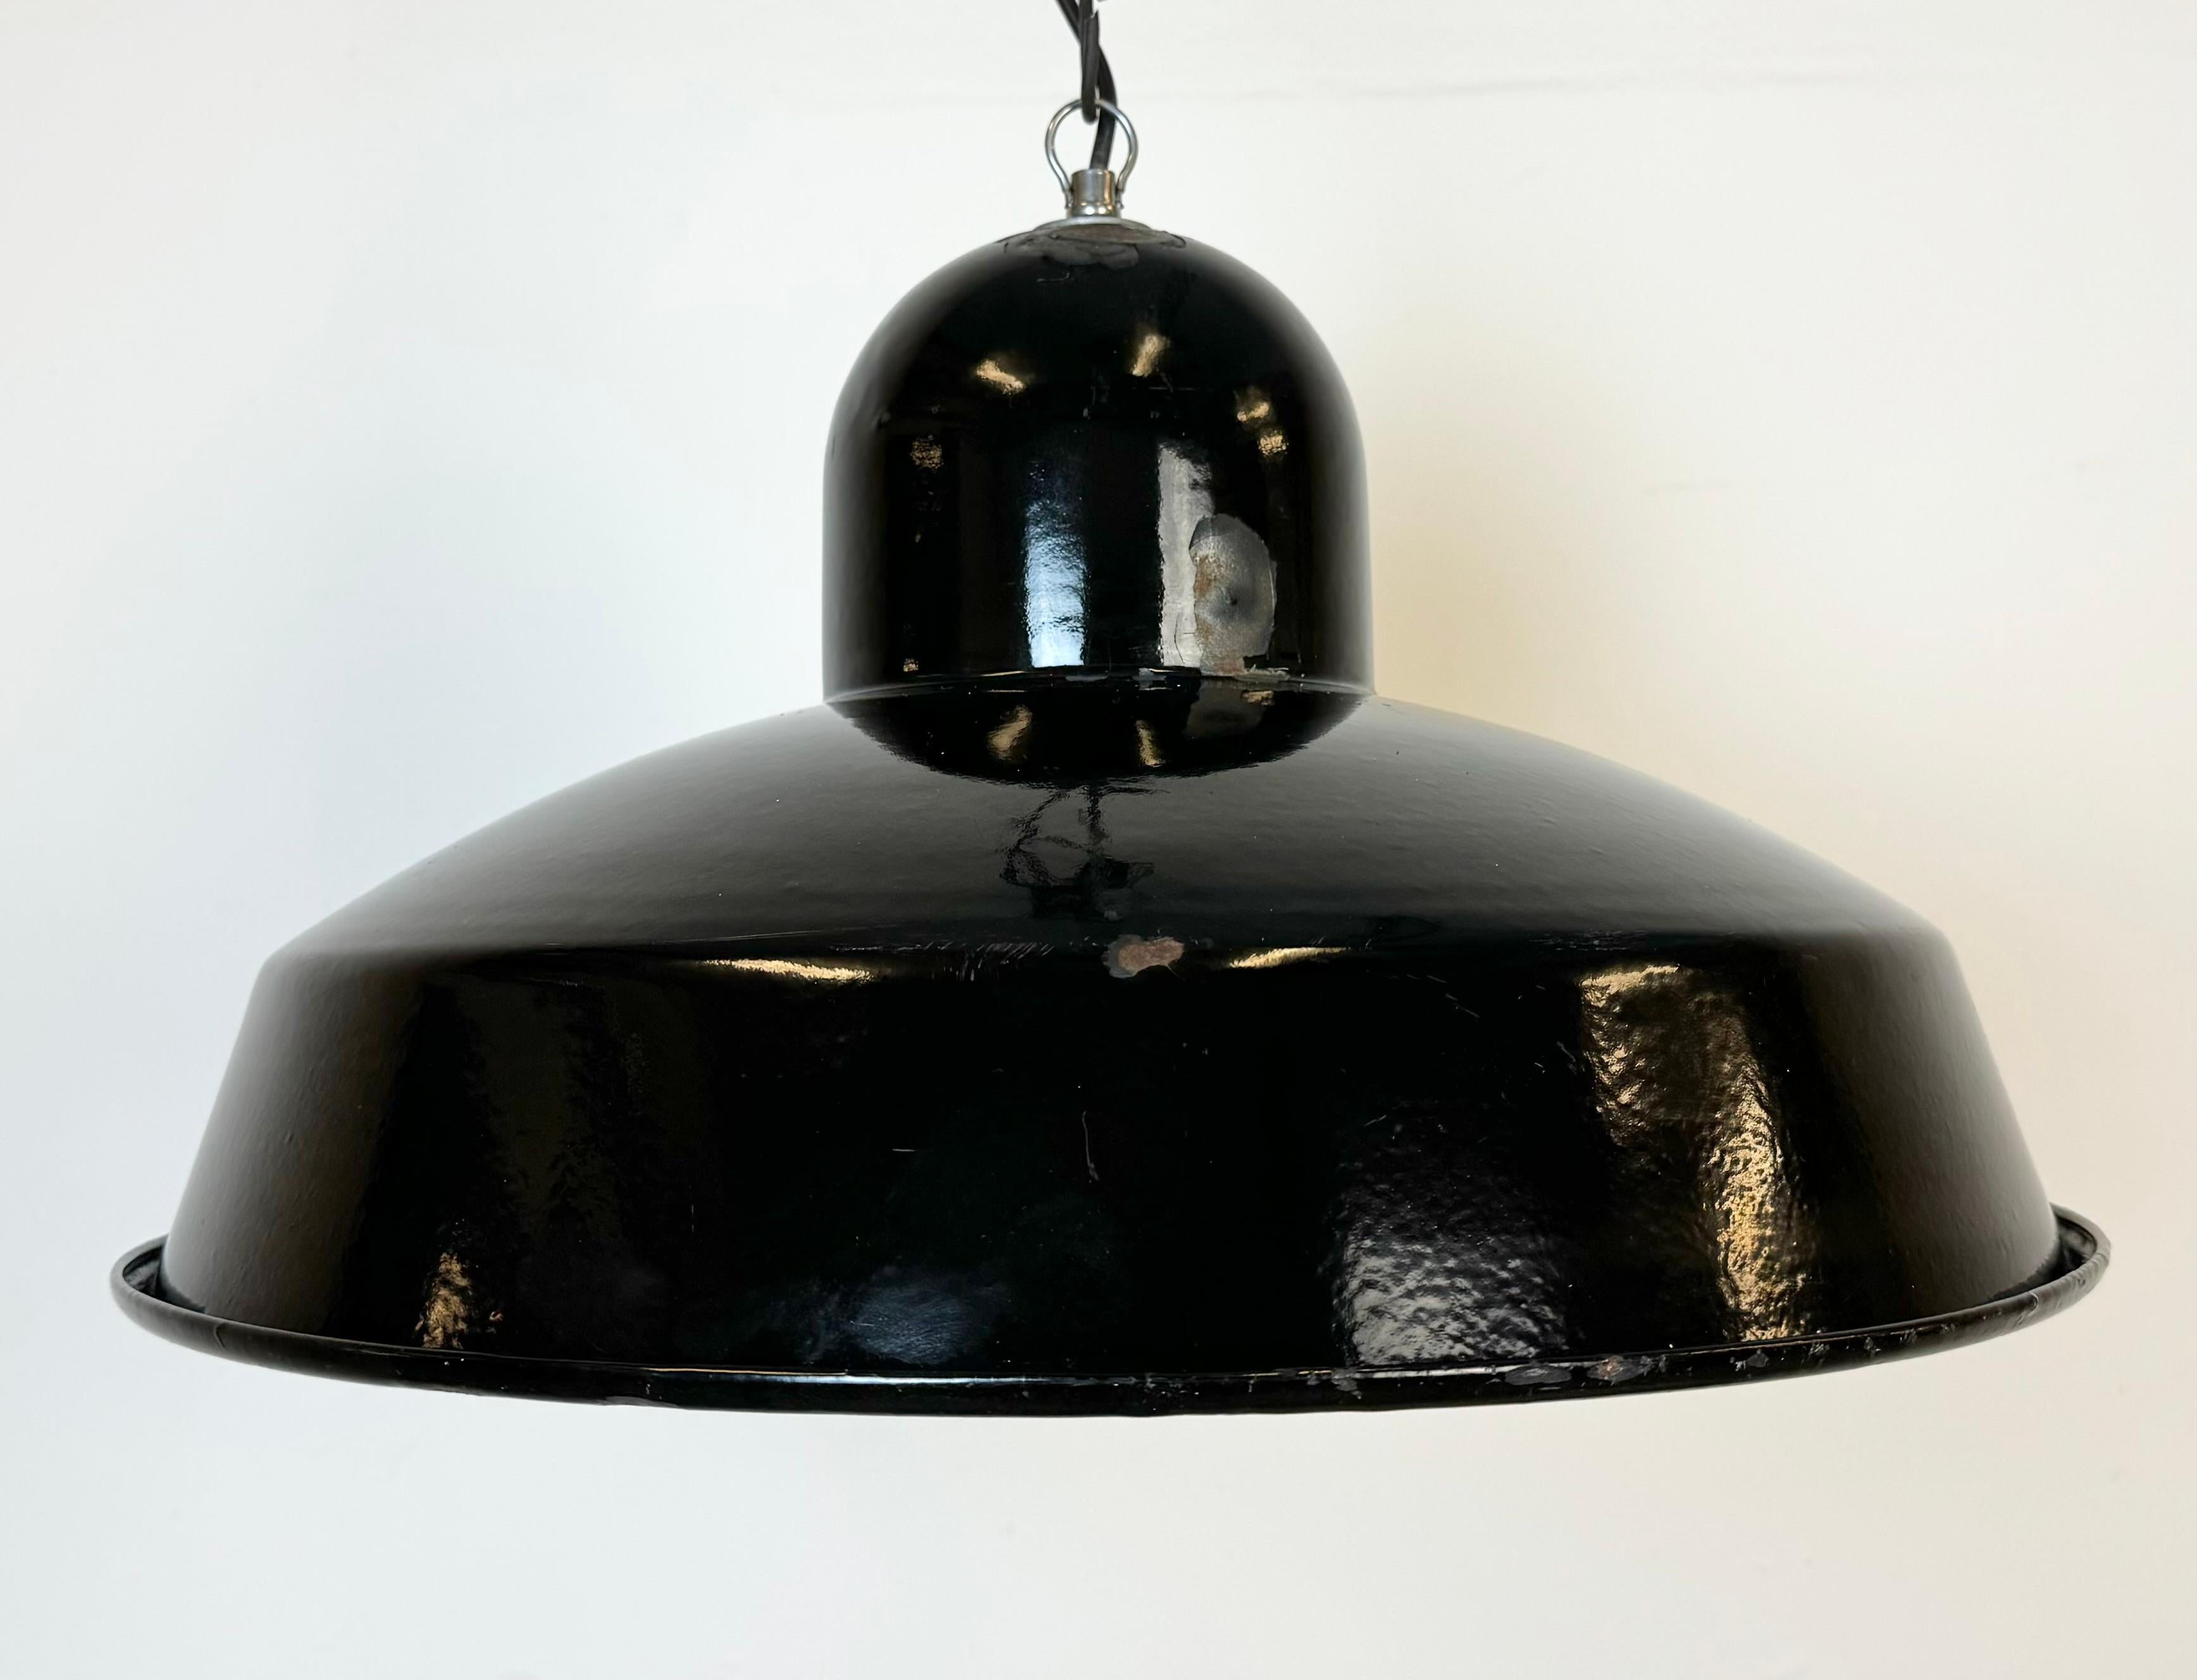 Portuguese Industrial Black Enamel Factory Pendant Lamp, 1960s For Sale